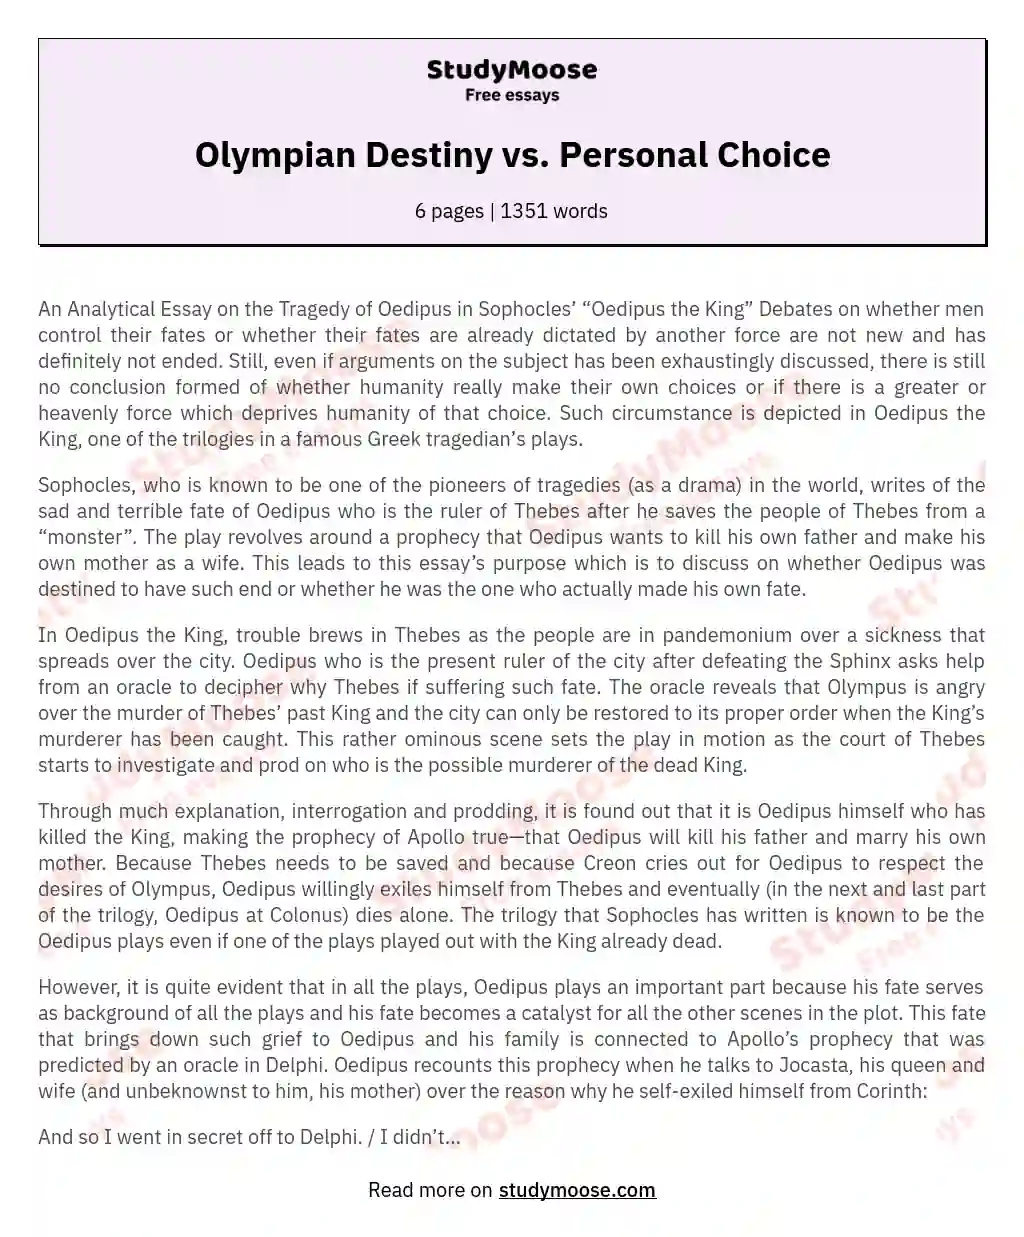 Olympian Destiny vs. Personal Choice